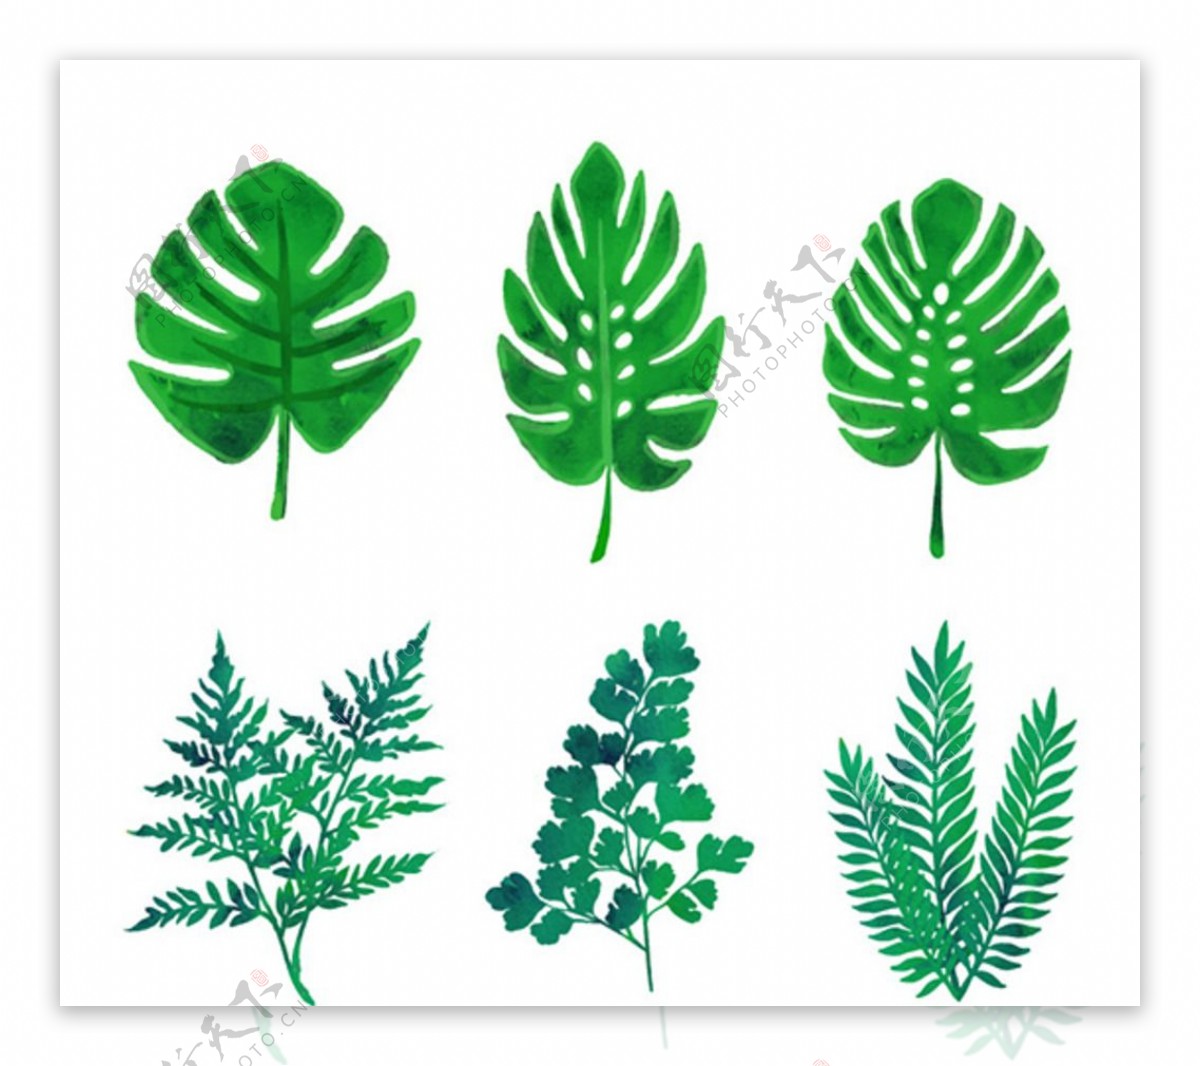 6款绿色植物叶子矢量素材